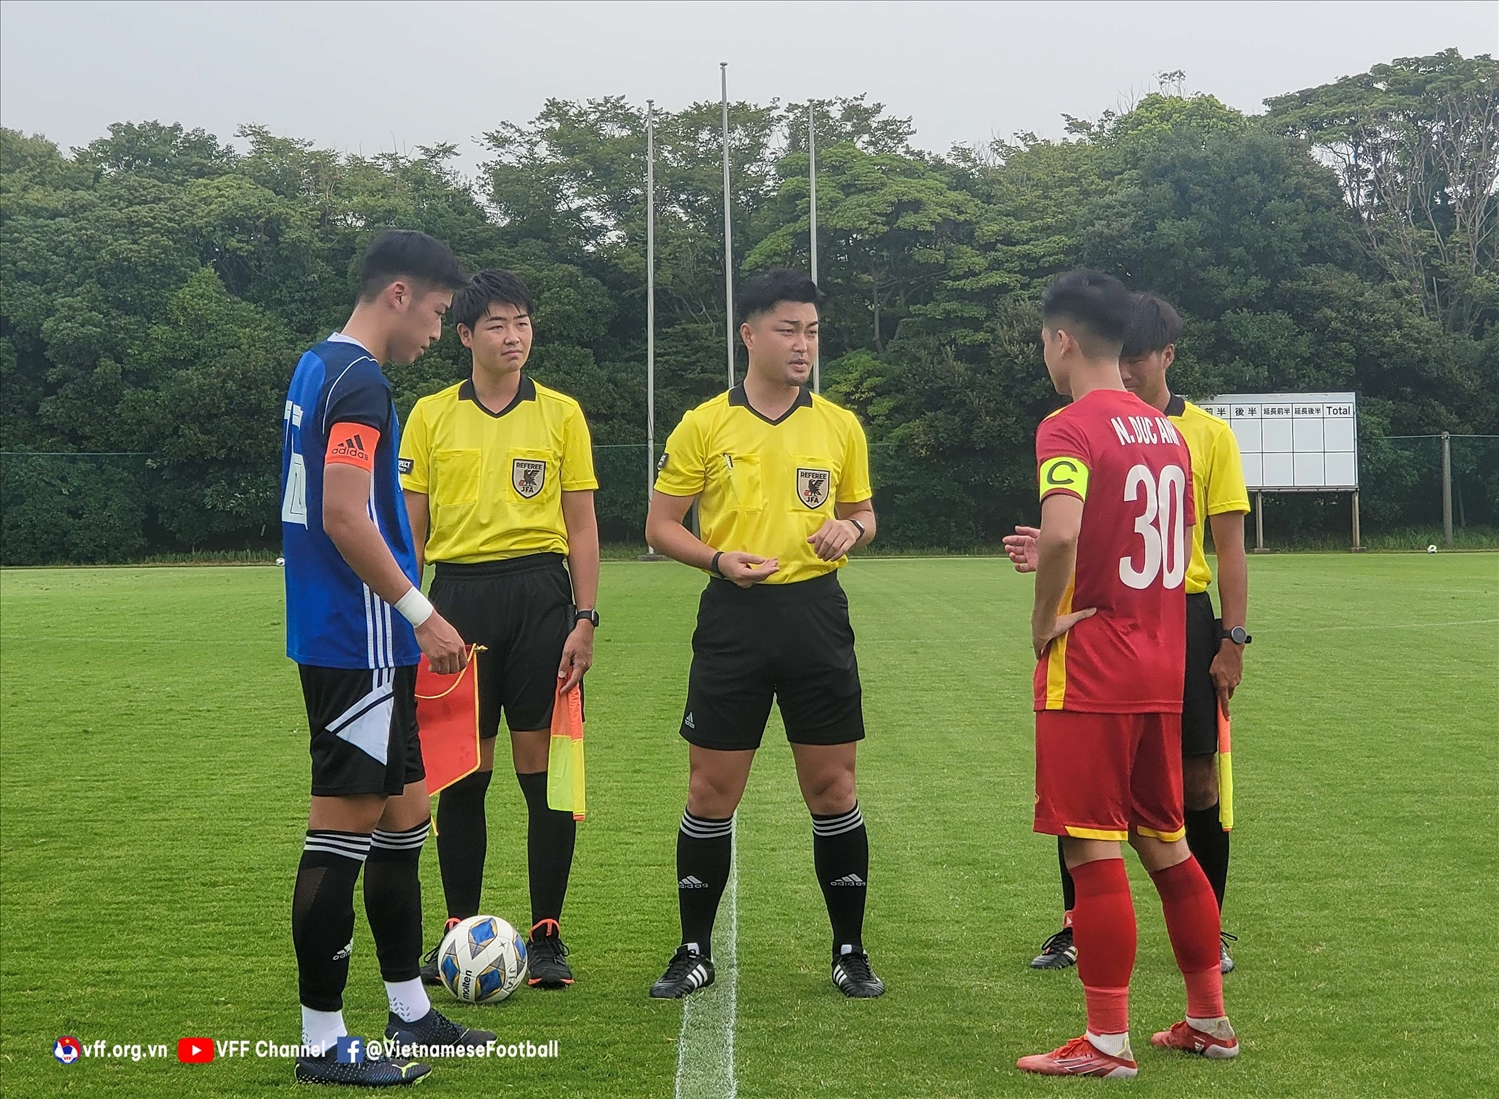 Đội tuyển U20 Việt Nam đang có chuyến tập huấn tại Nhật Bản (Ảnh: VFF)